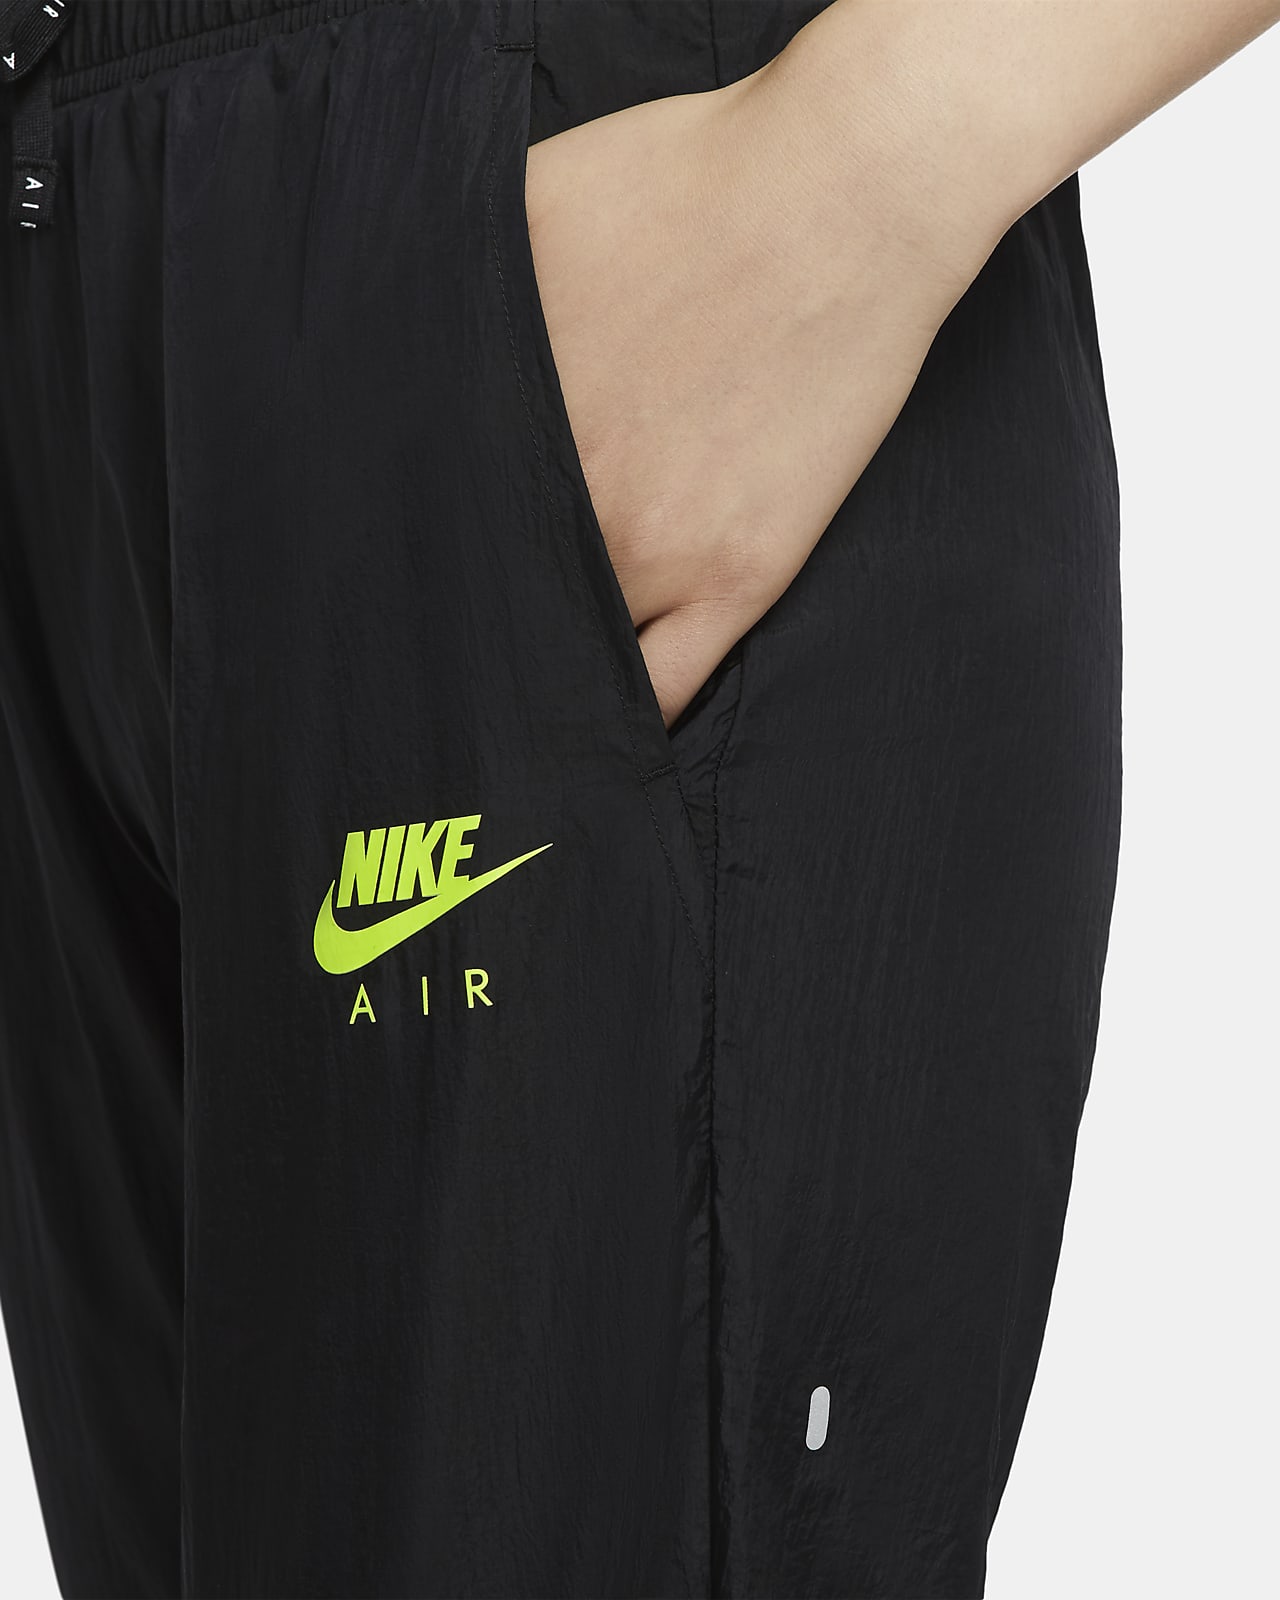 Pantalones De Running Para Mujer Nike Air Nike Mx